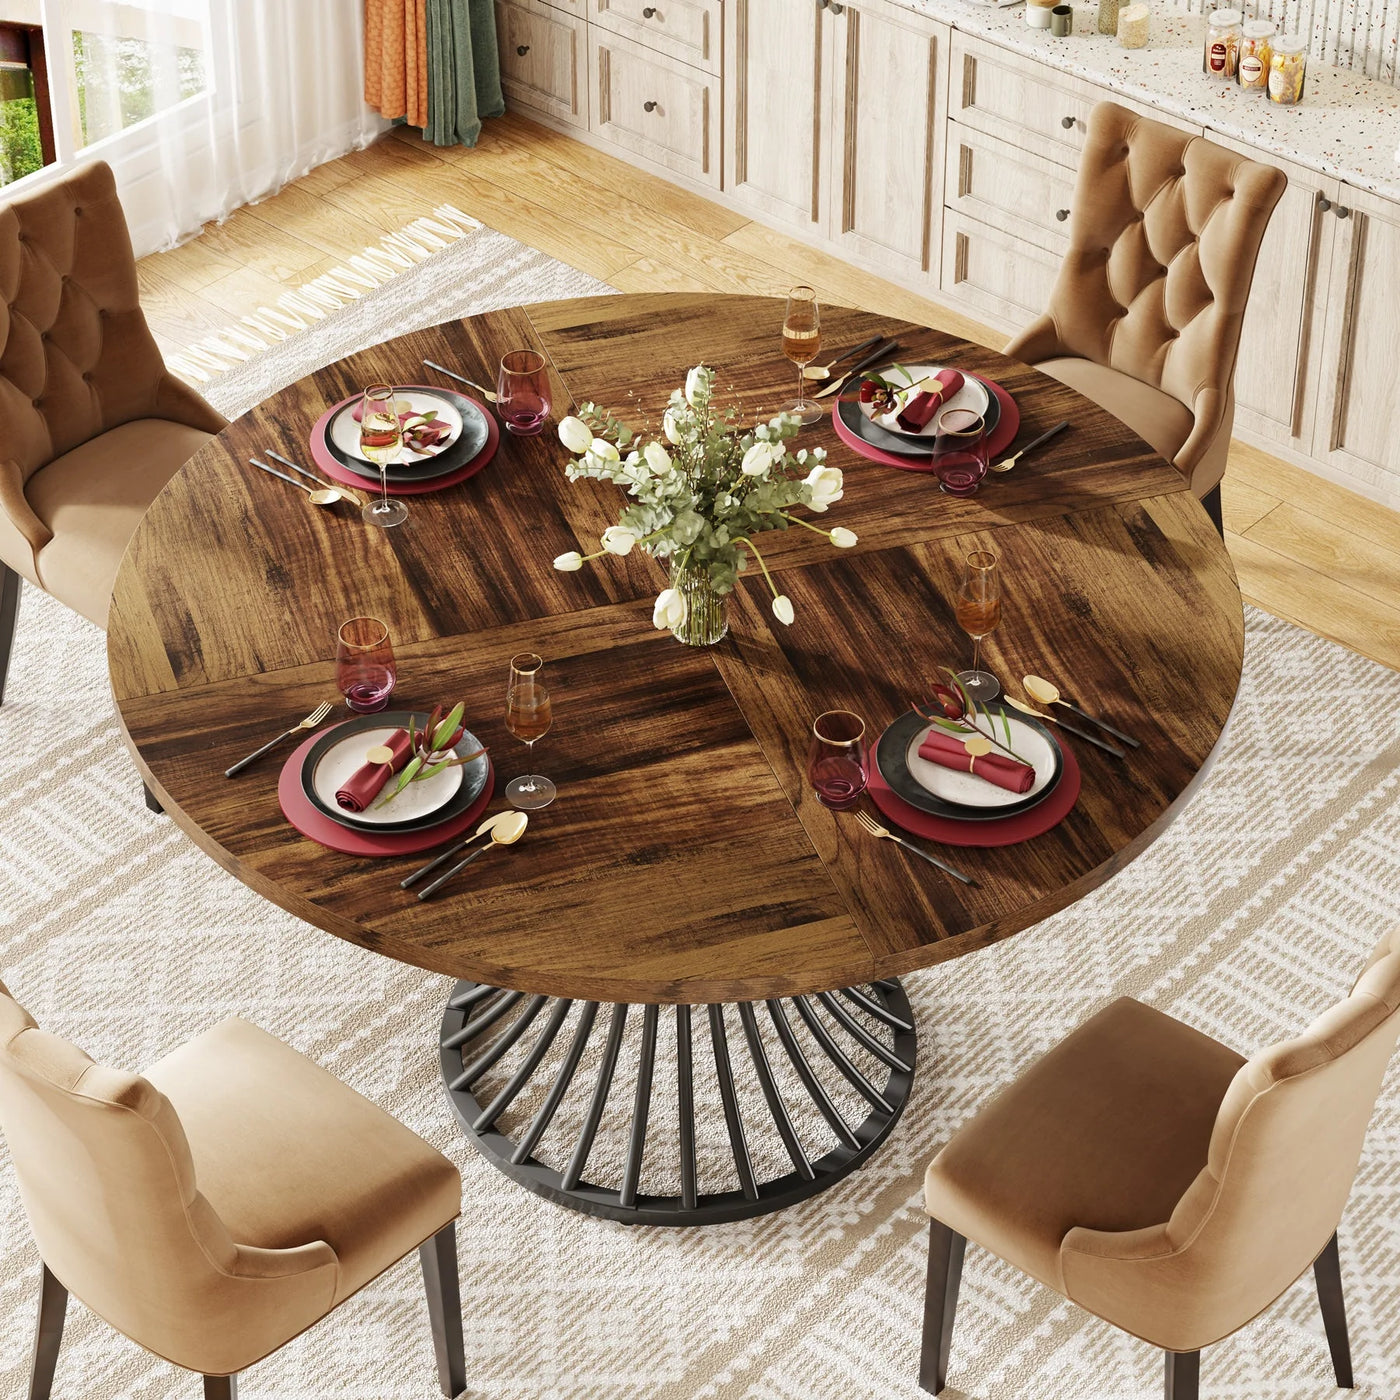 طاولة طعام خشبية مستديرة من هارتيت تتسع لـ 4-6 أشخاص | طاولة المطبخ الدائرية للمزرعة